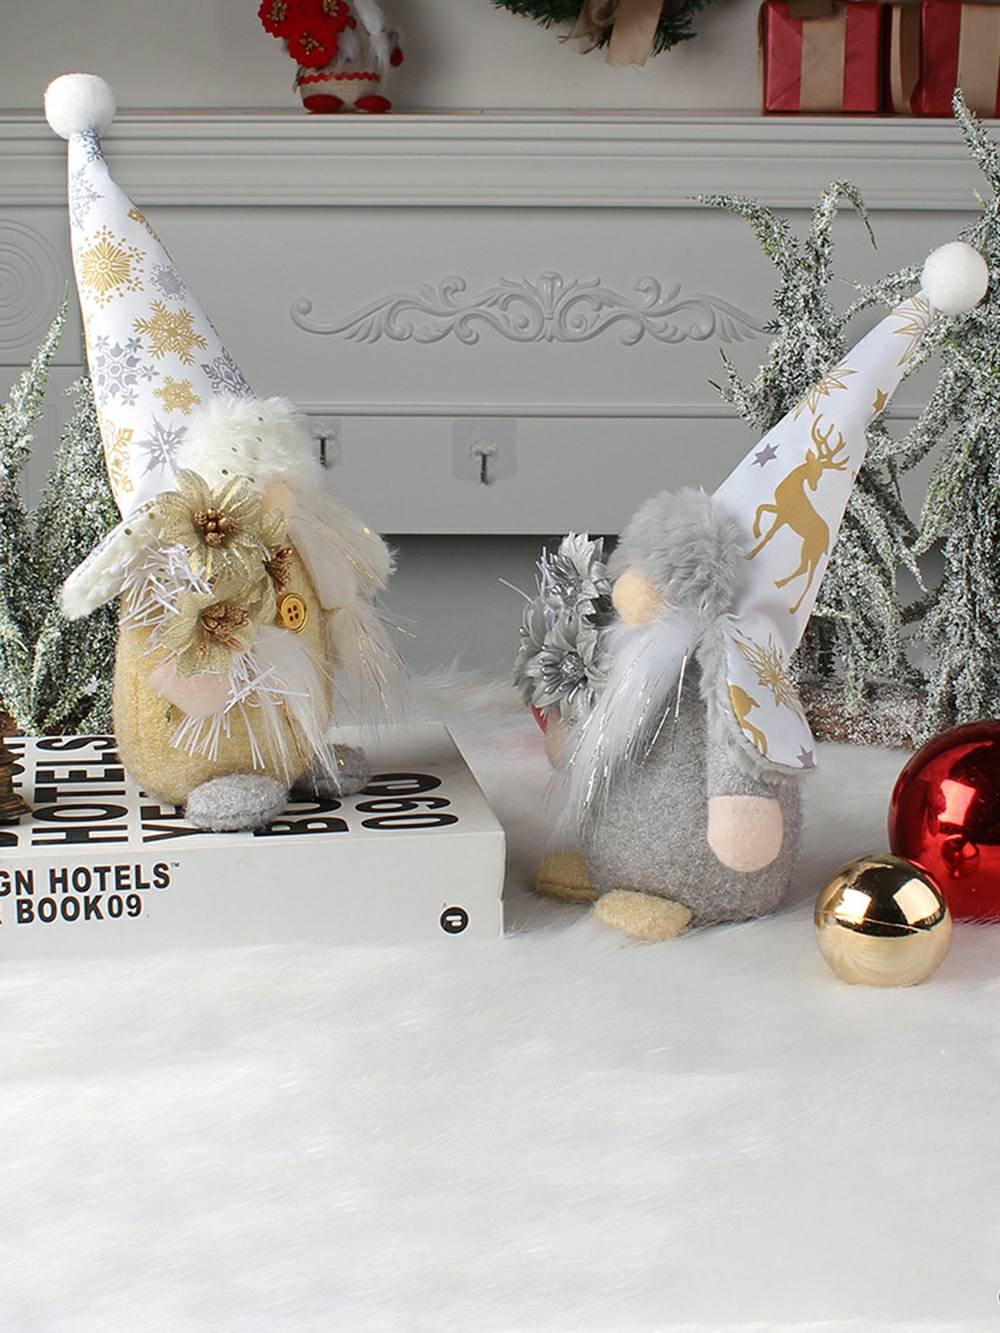 Weihnachts-Plüsch-Elf mit goldener und silberner Blume, Rudolph-Puppe